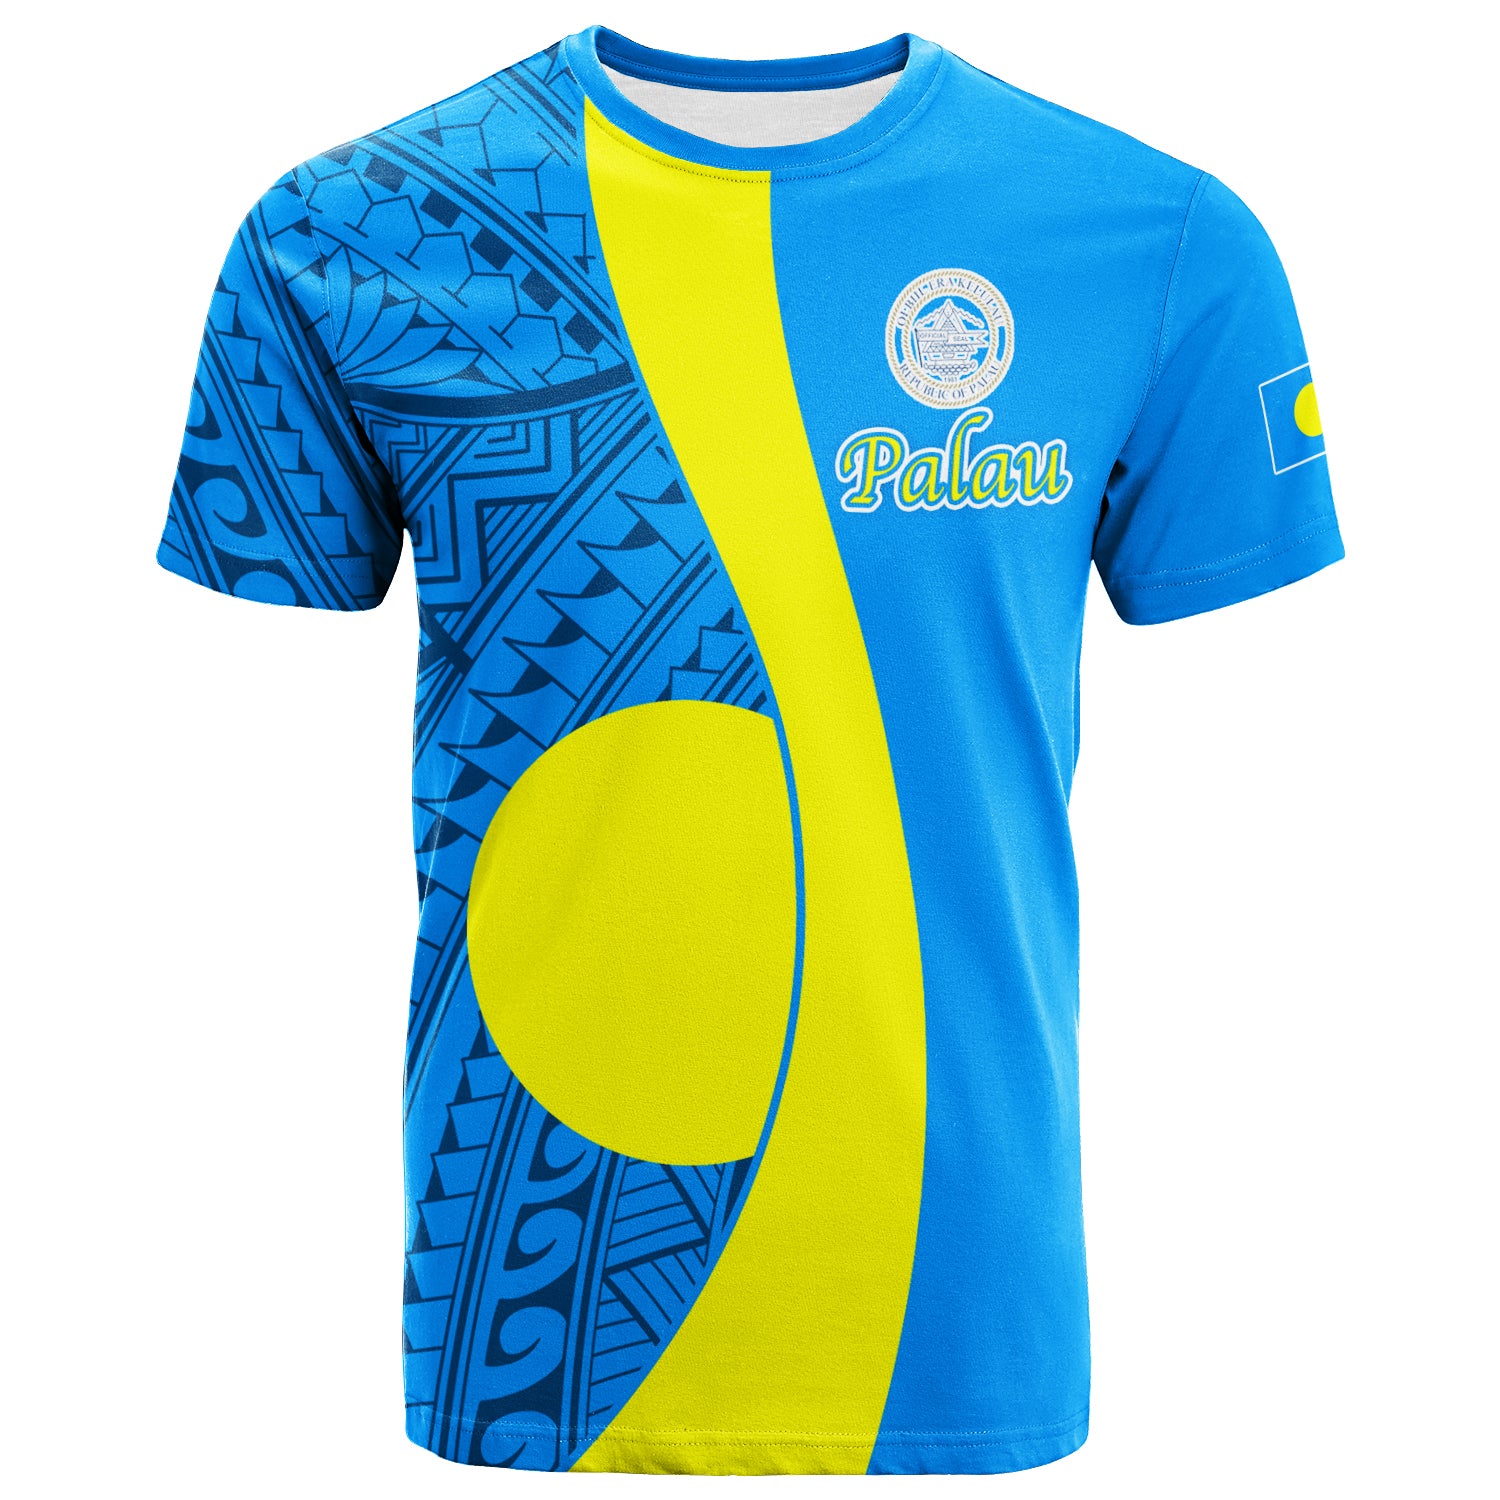 Palau T Shirt Tribal Pattern LT12 Unisex Blue - Polynesian Pride